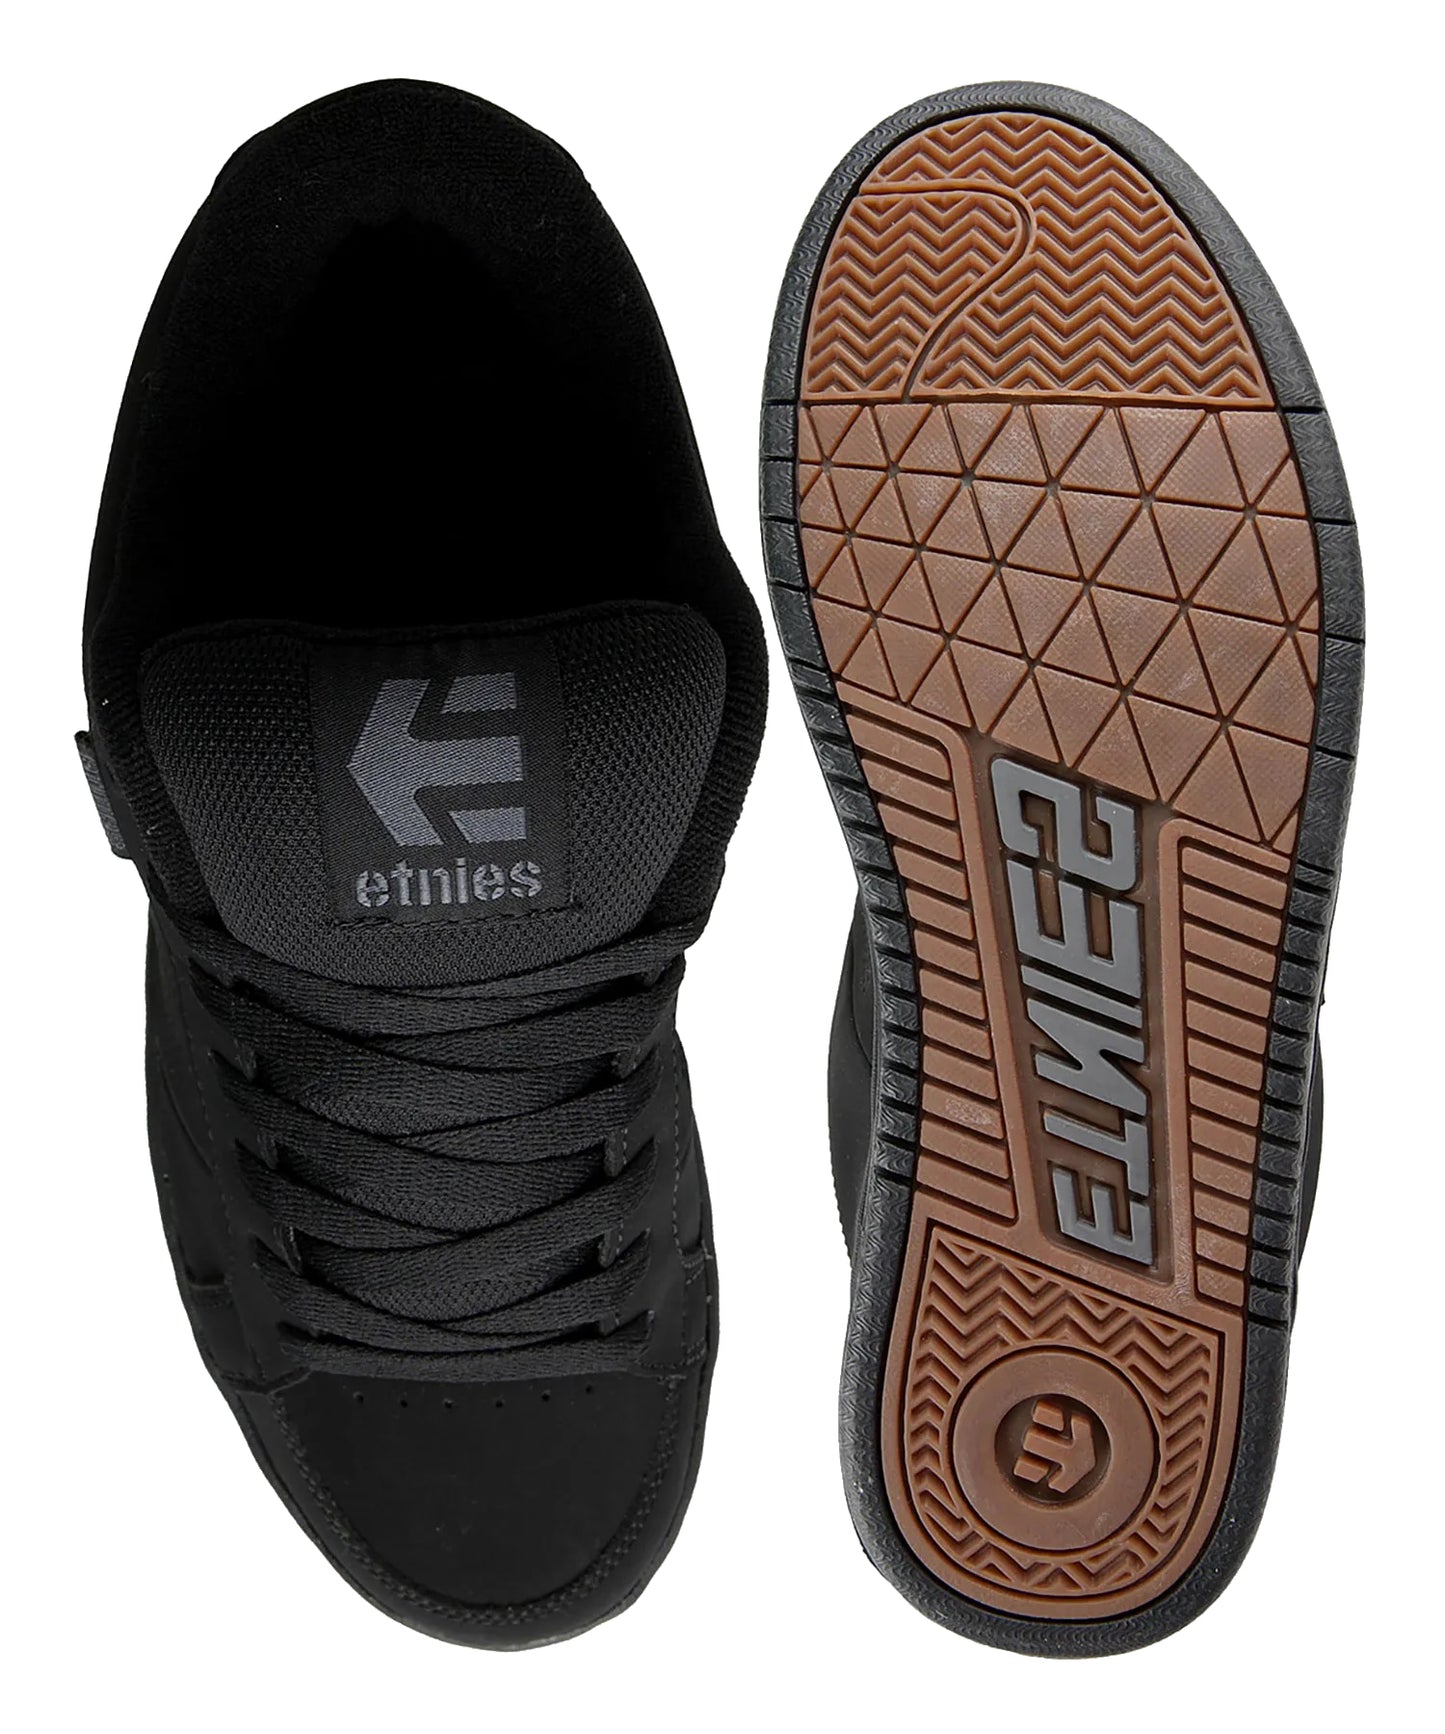 etnies-zapatillas kingpin-black-nabuk-sintetico-suela goma eva 400 nbs-plantilla eva troquelada